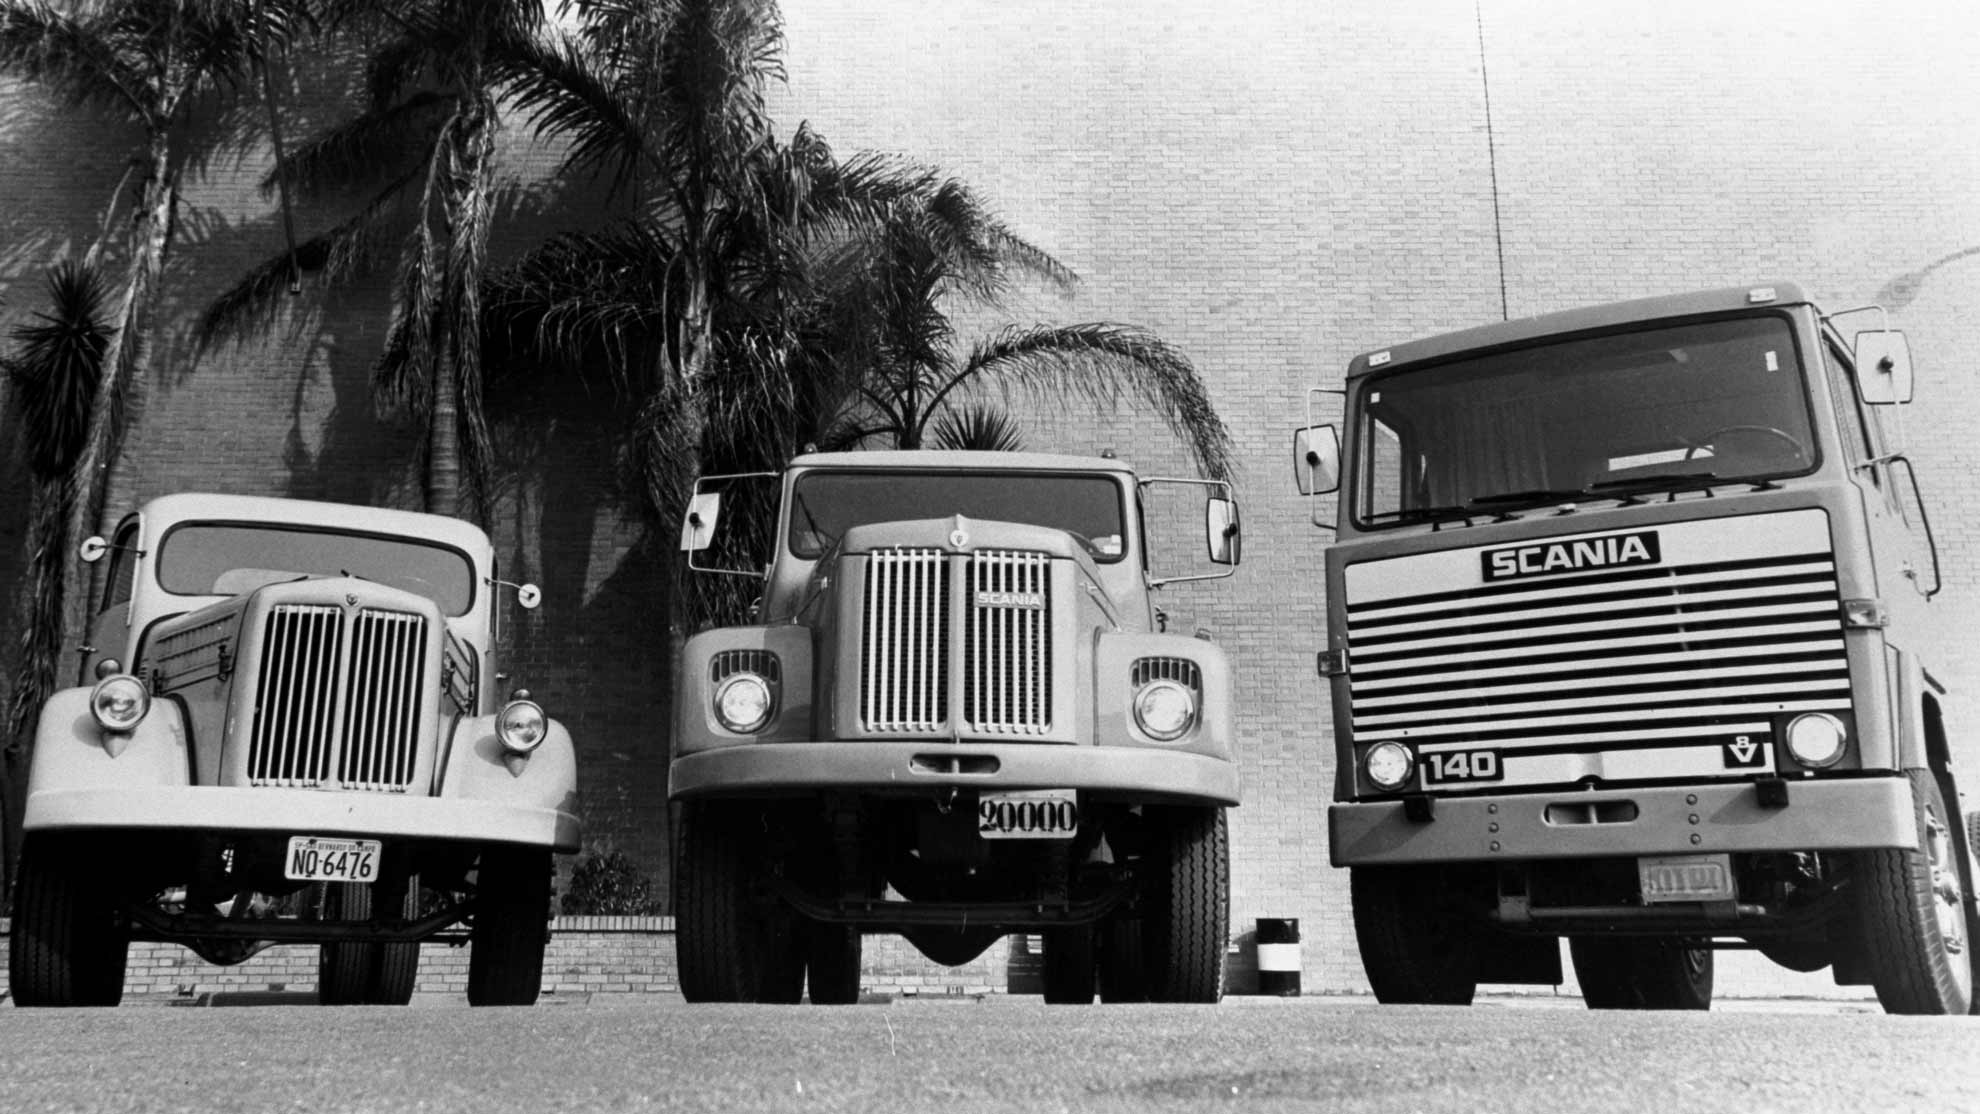 Modelos Scania fabricados em 1974